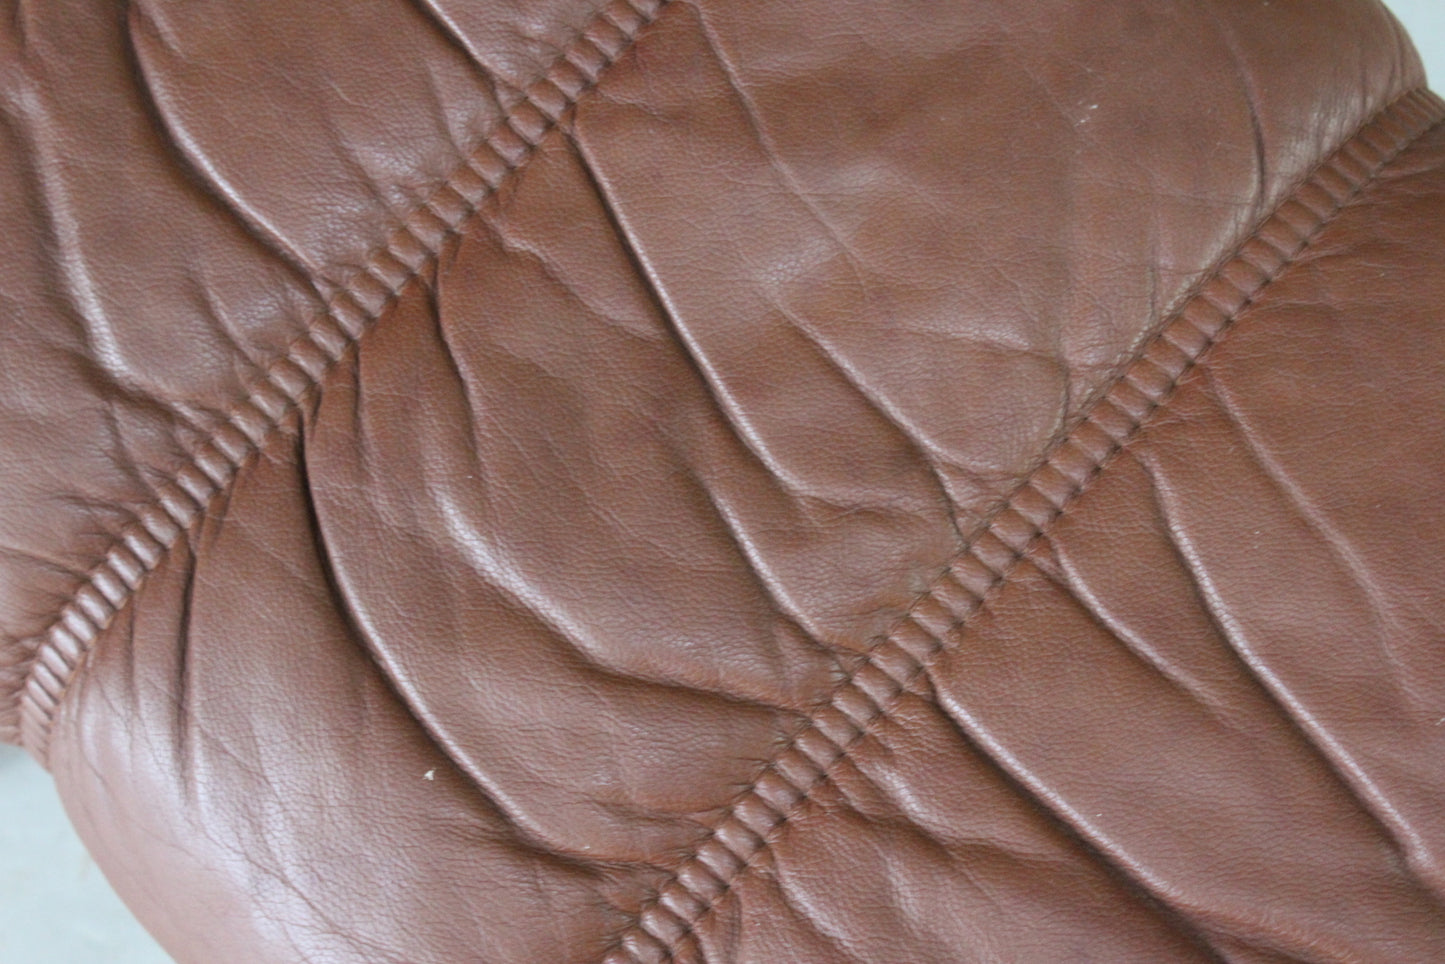 Retro Tan Leather Footstool - Kernow Furniture